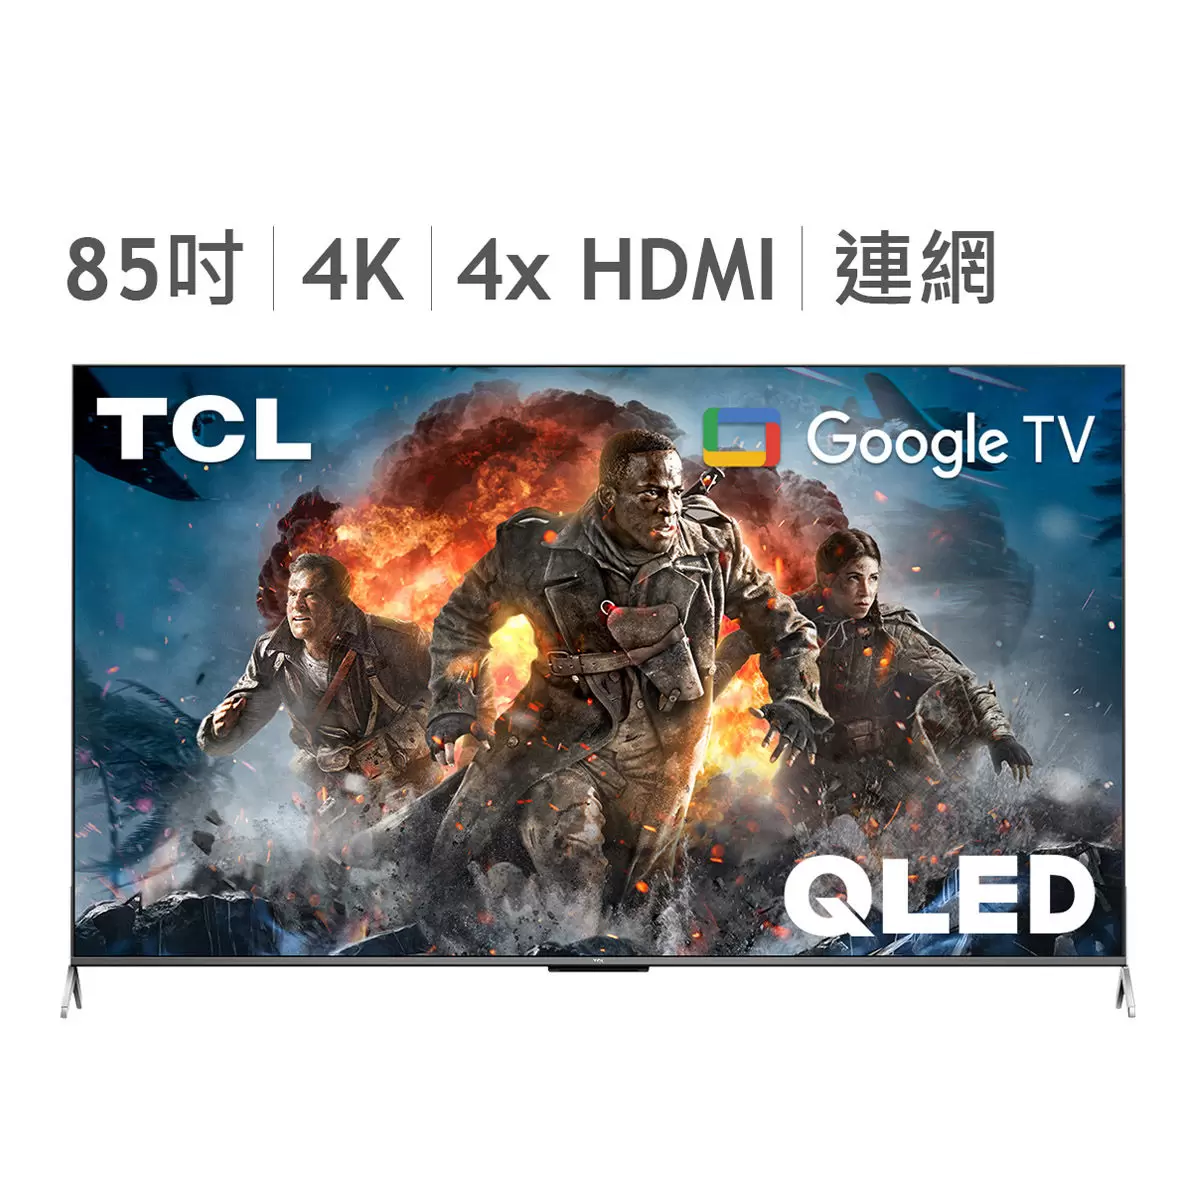 TCL 85吋 4K QLED Google TV 量子智能連網液晶顯示器不含視訊盒 85C735